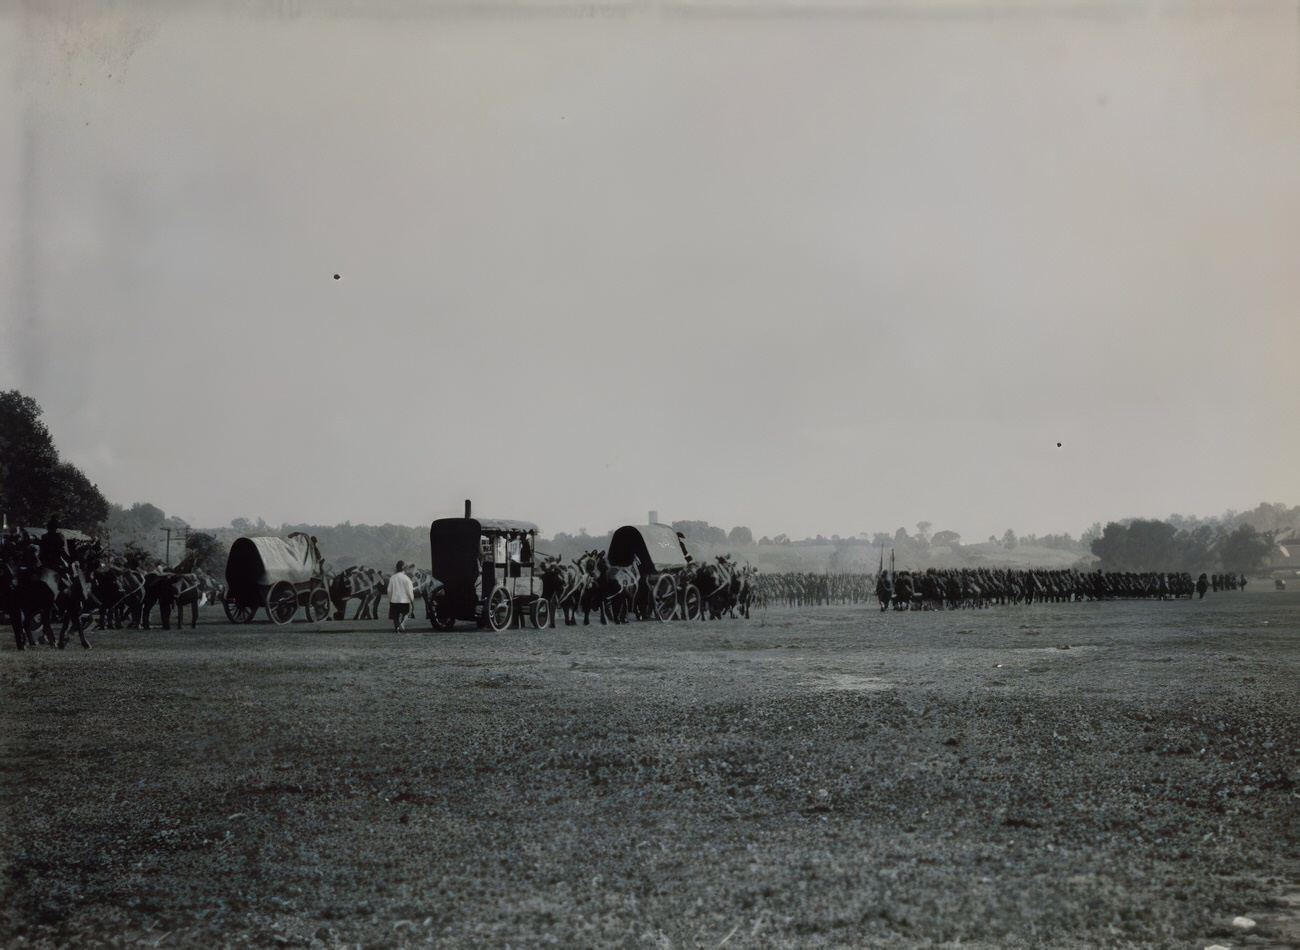 Troop Maneuvers In What Is Likely Van Cortlandt Park, Circa 1915.